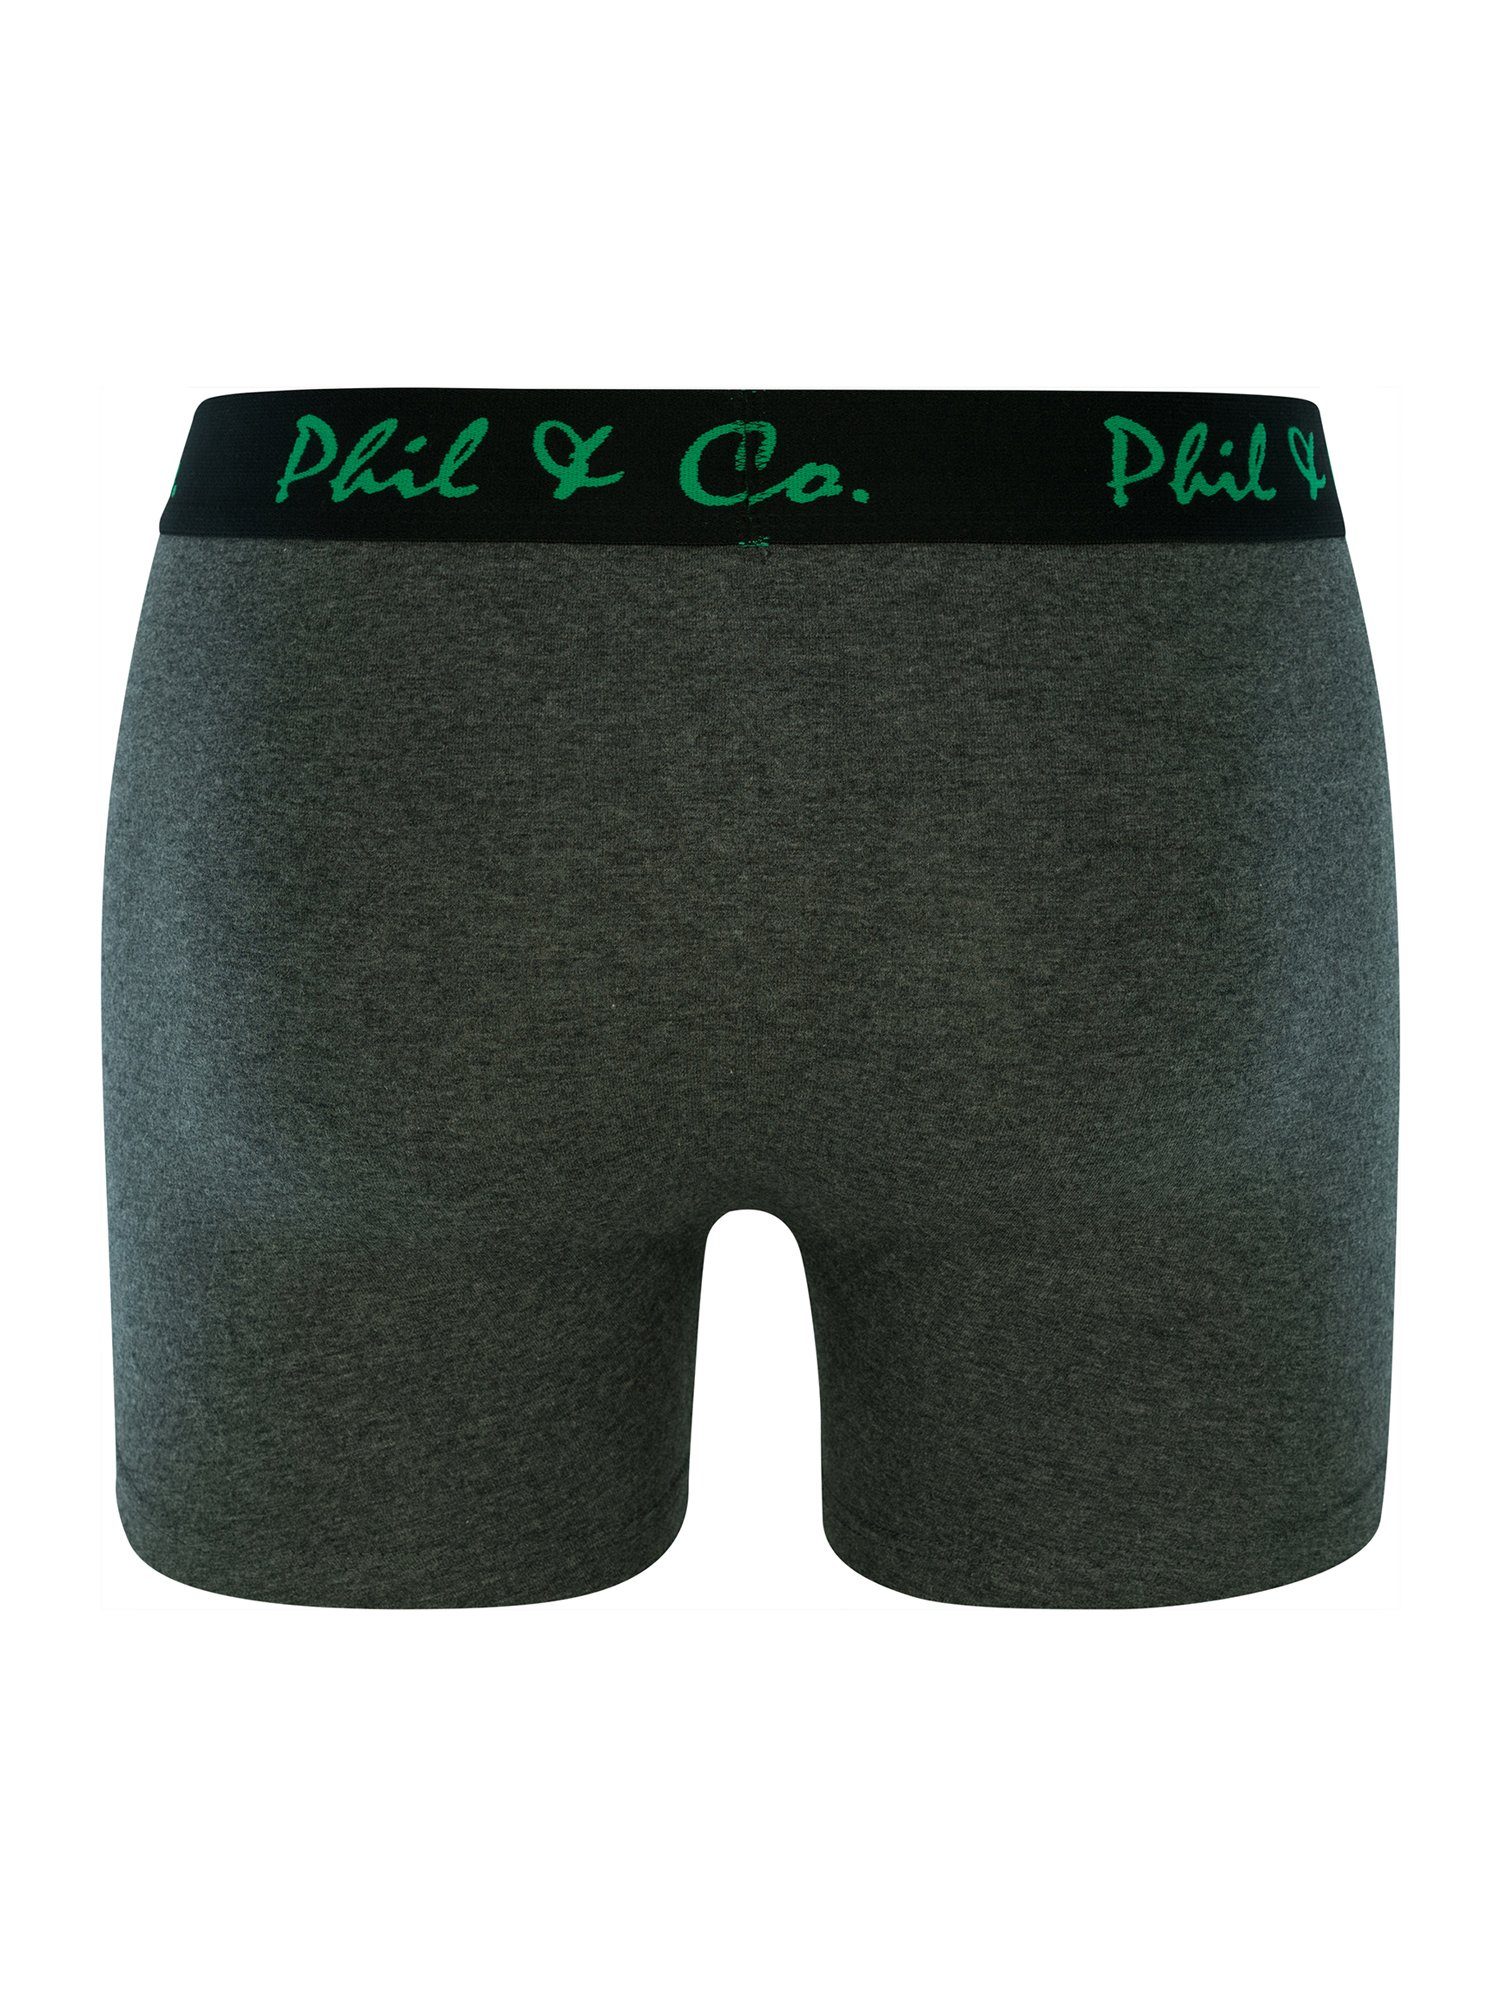 Phil & Co. Retro Pants grün-anthrazit Jersey (6-St)